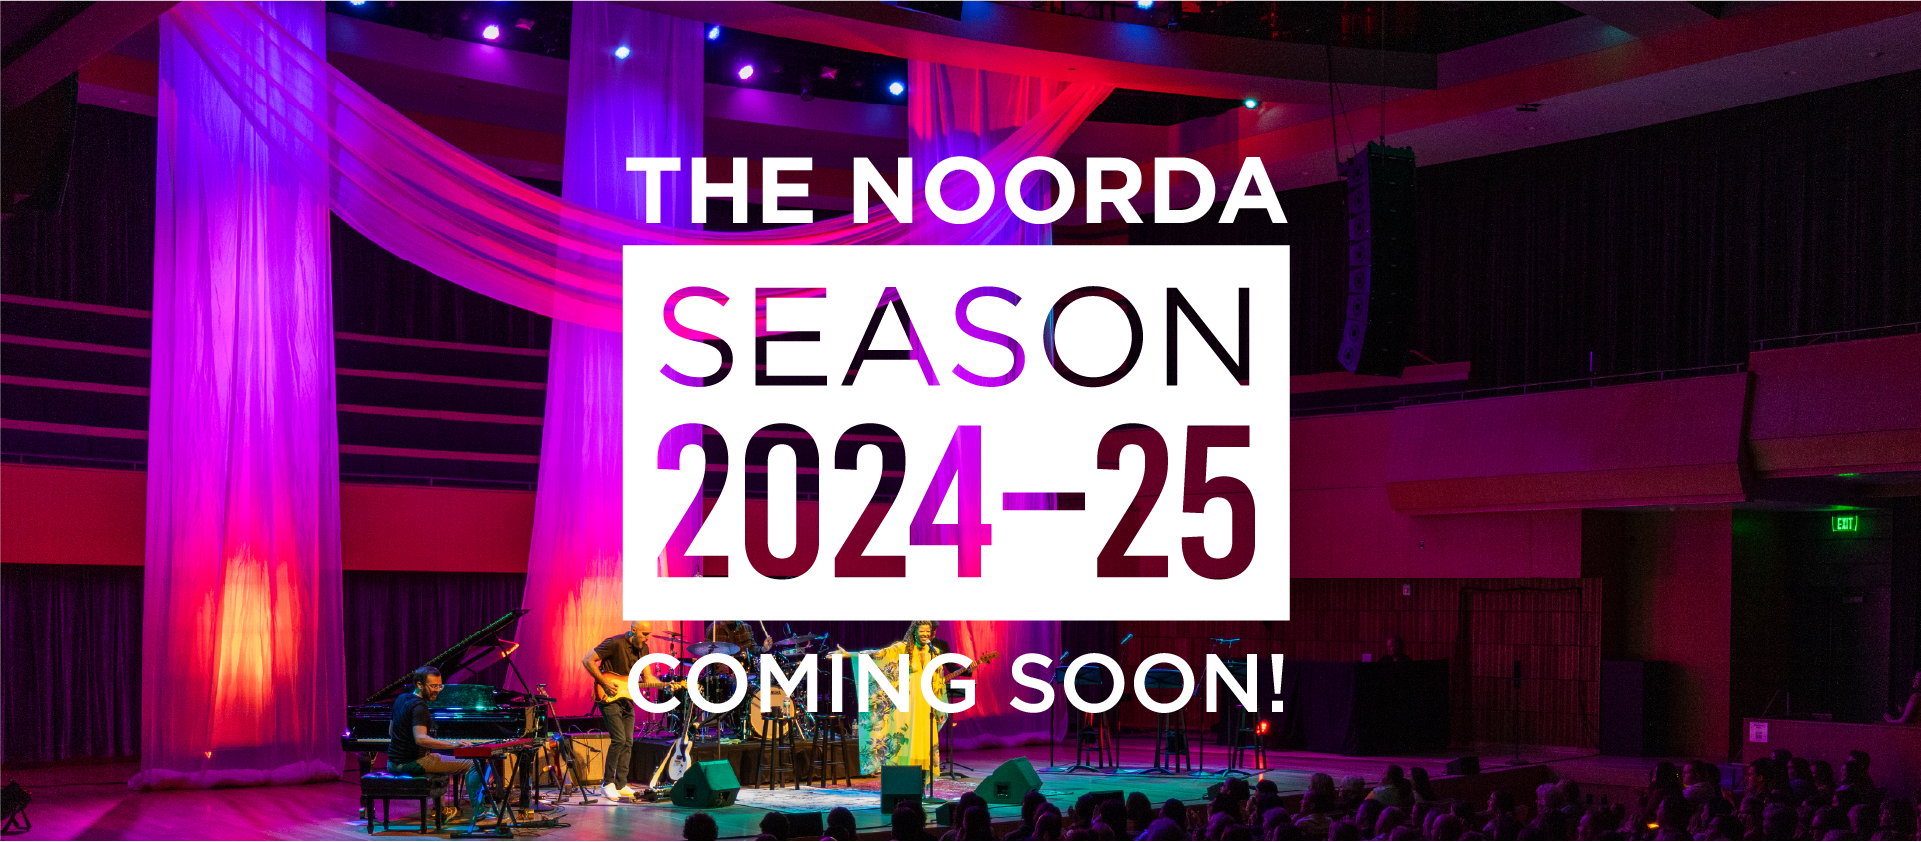 The Noorda Season 2024-25 Coming Soon!